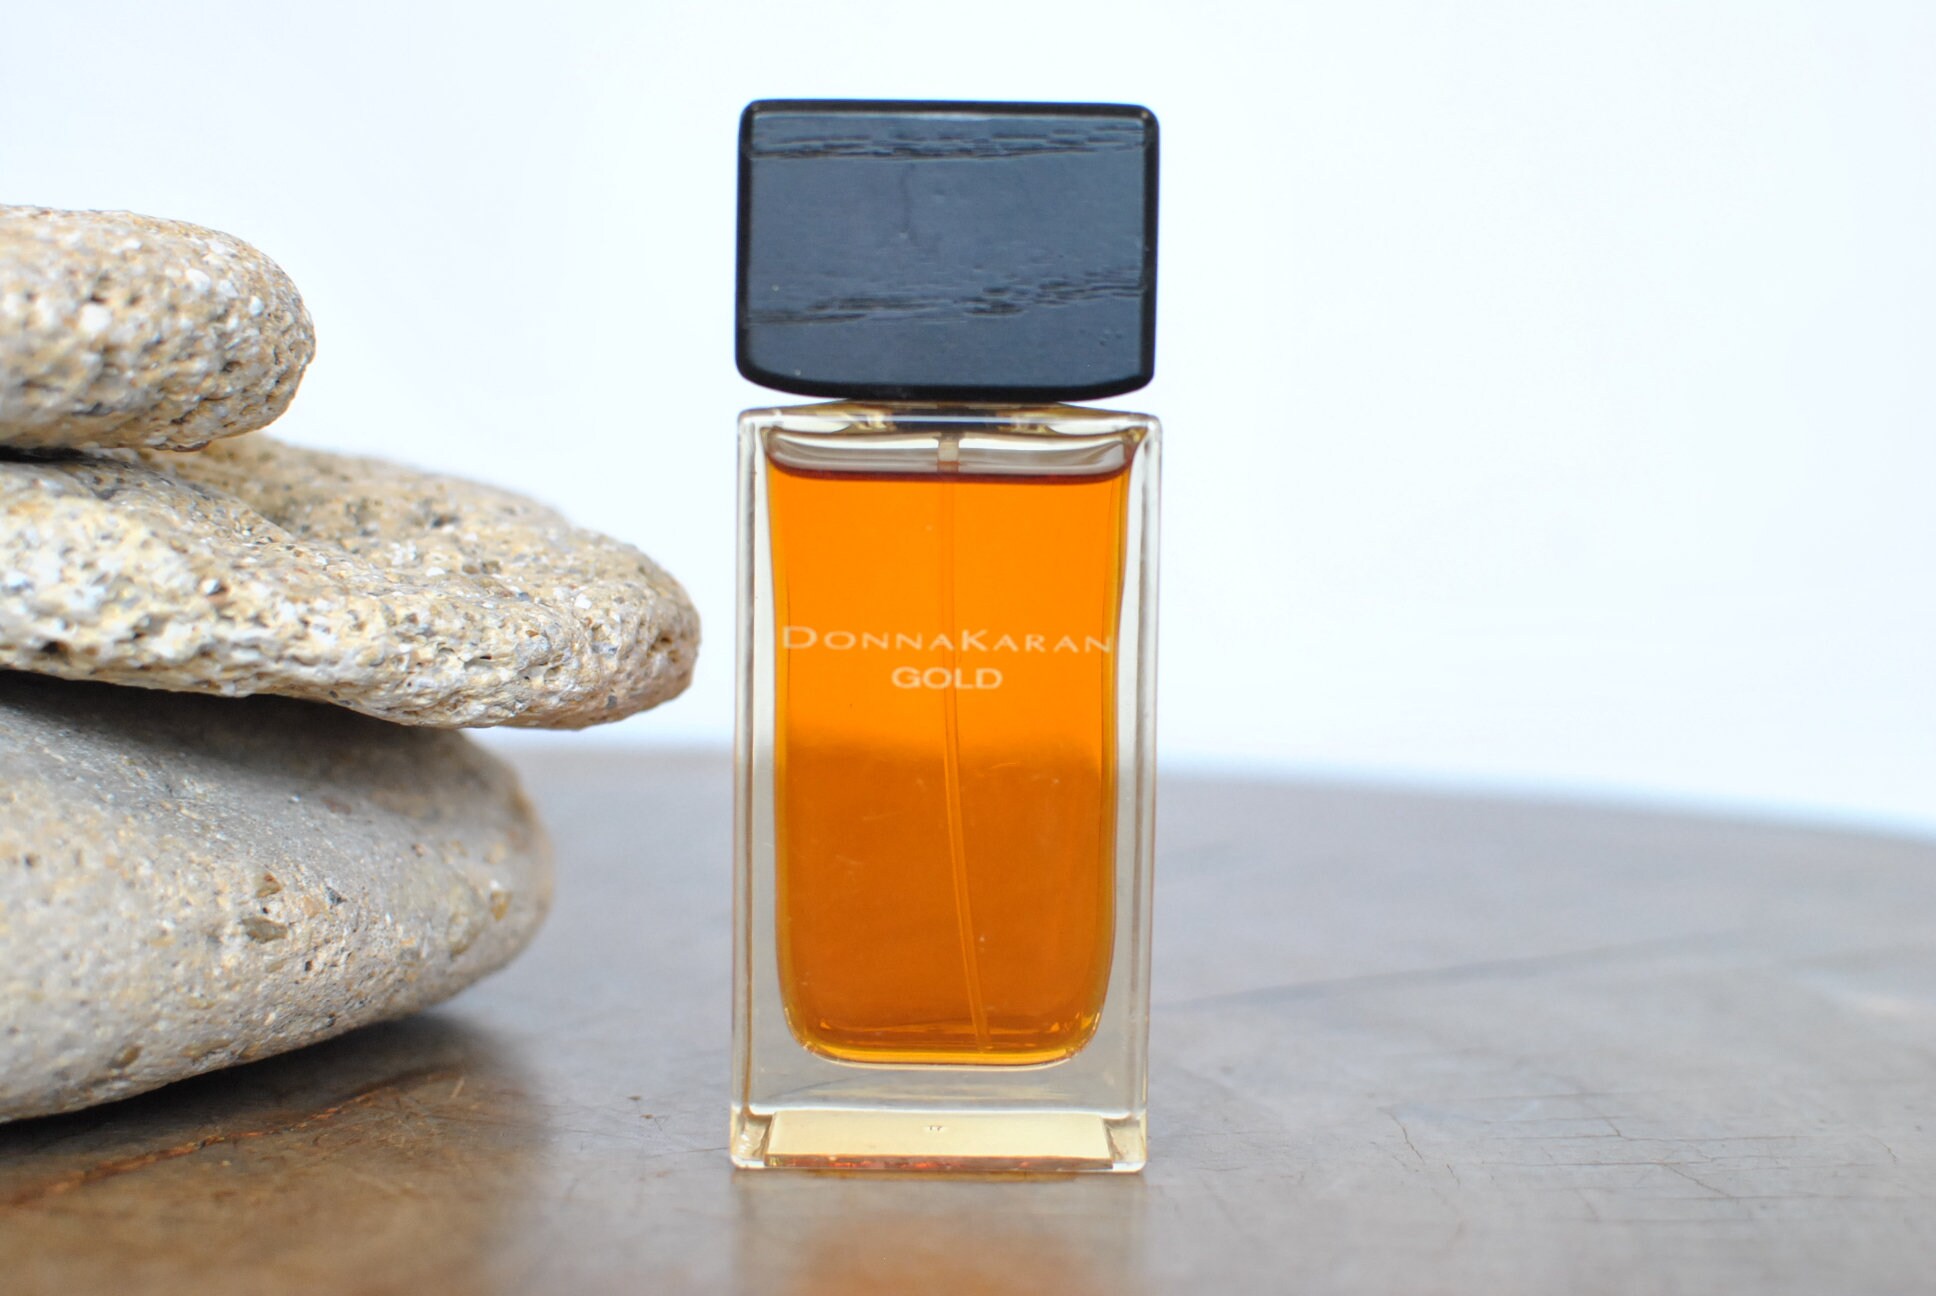 Donna Karan Gold Perfume